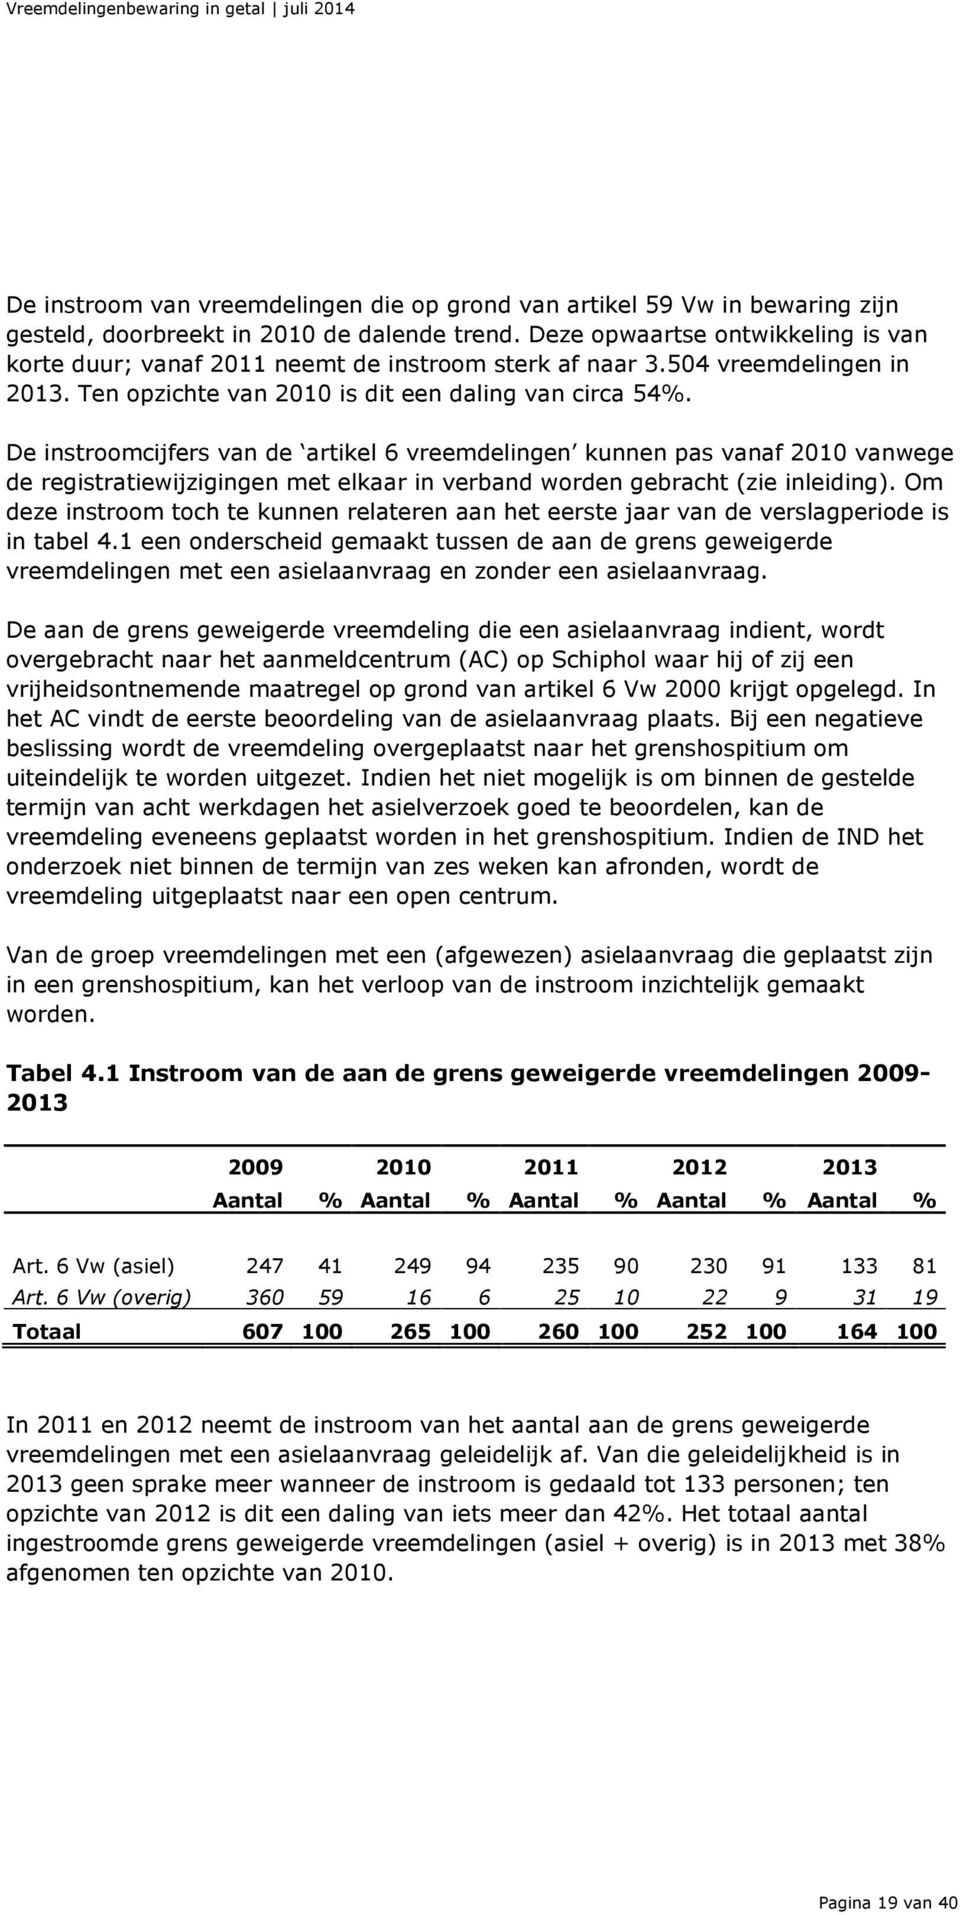 De instroomcijfers van de artikel 6 vreemdelingen kunnen pas vanaf 2010 vanwege de registratiewijzigingen met elkaar in verband worden gebracht (zie inleiding).